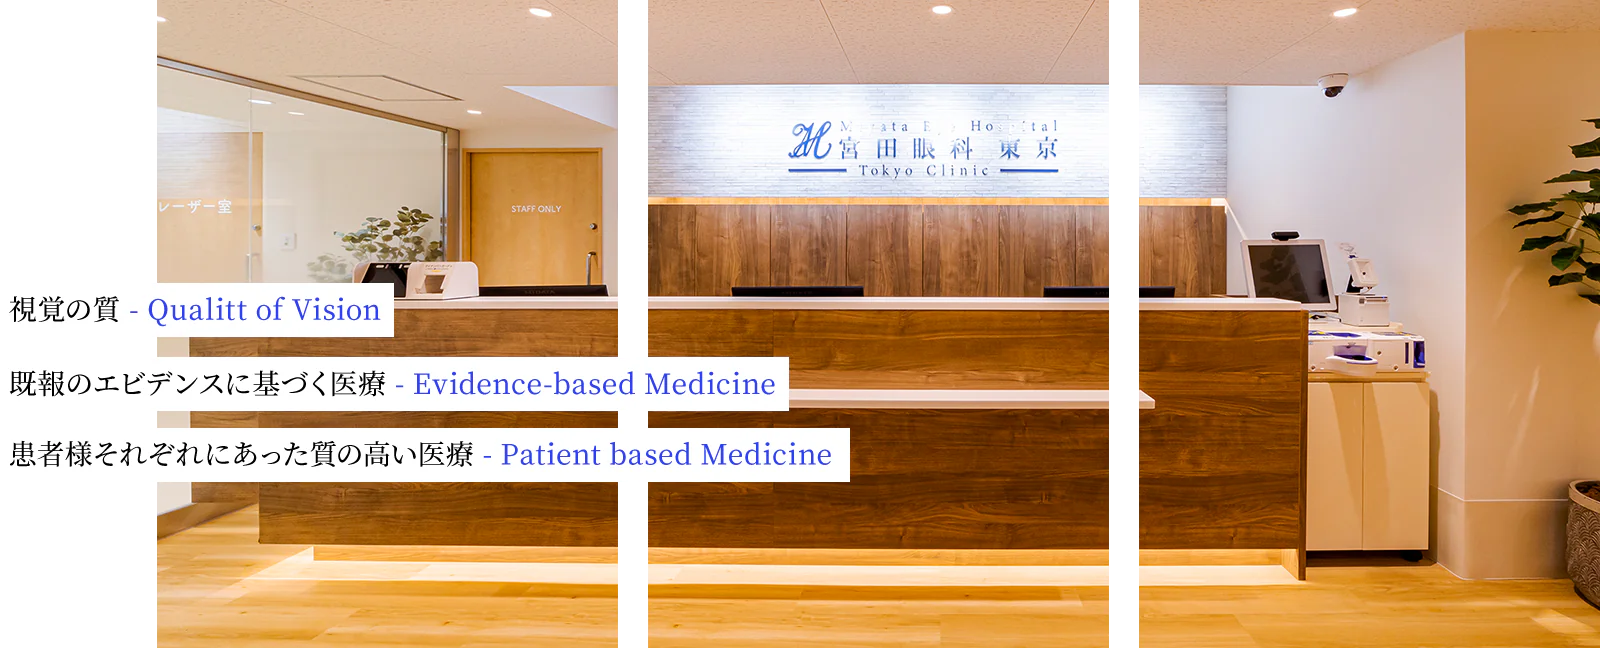 視覚の質 - Qualitt of Vision 既報のエビデンスに基づく医療 - Evidence-based Medicine 患者様それぞれにあった質の高い医療 - Patient based Medicine